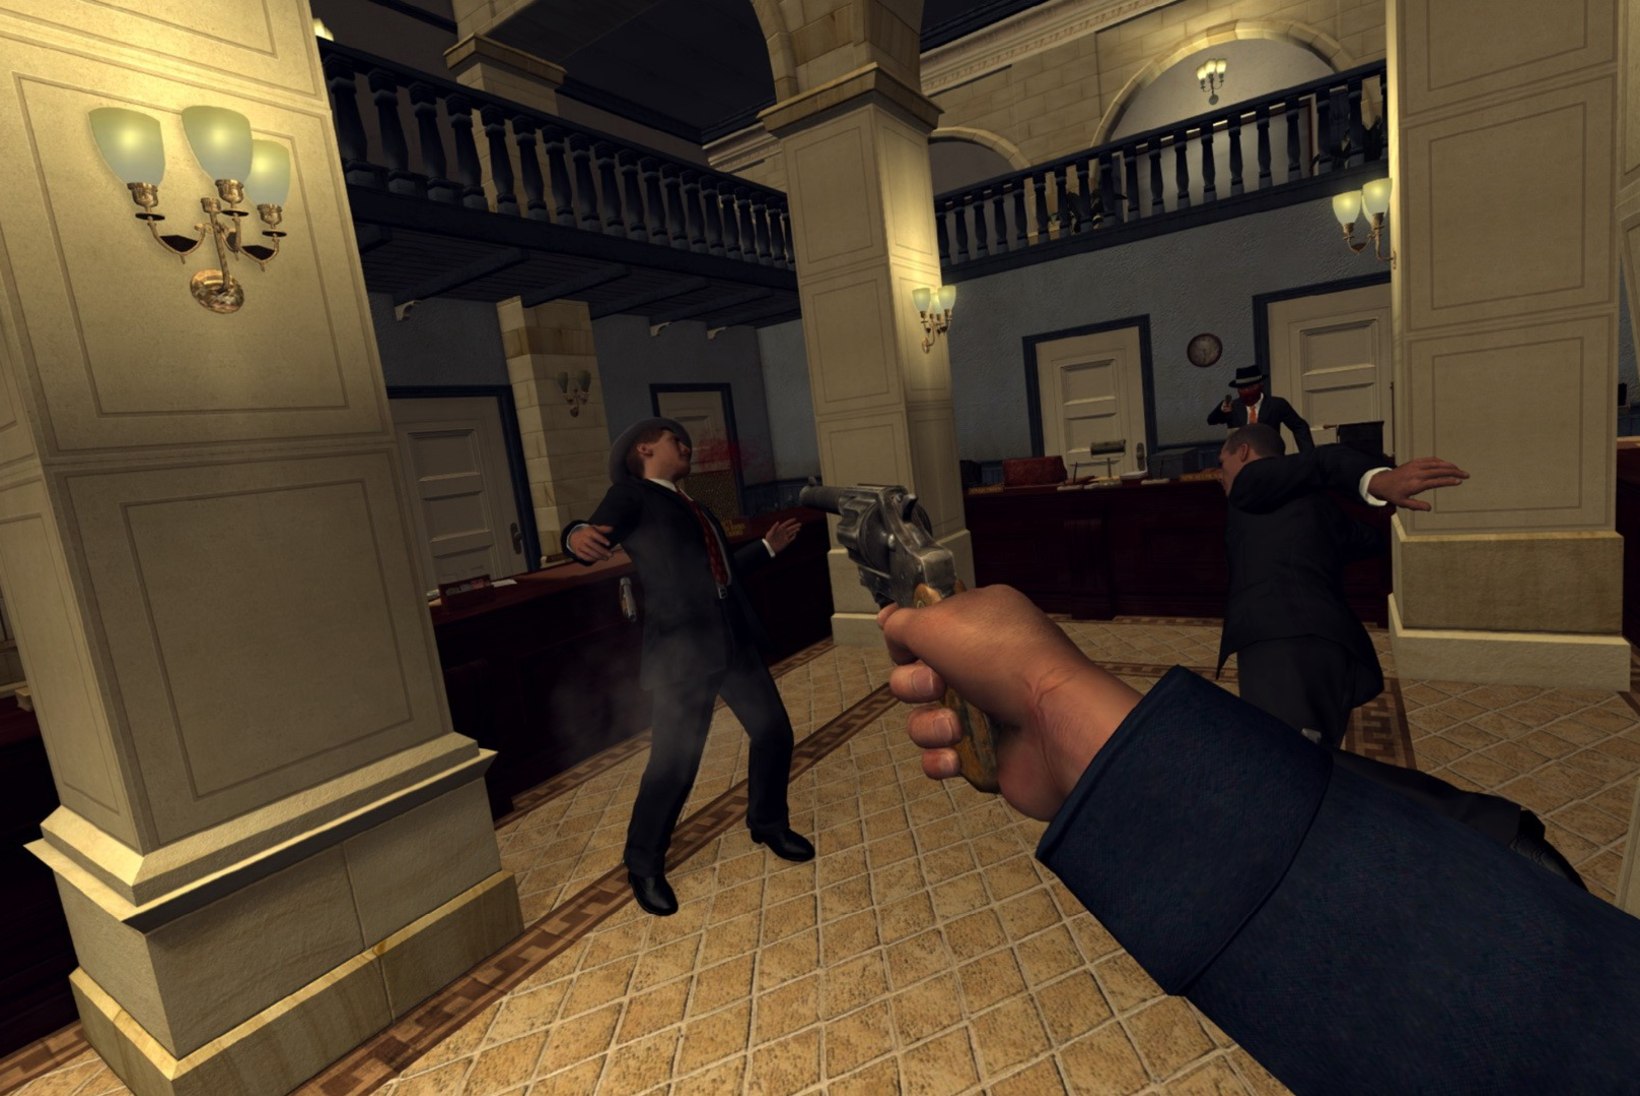 UNUSTA „GTA 6“! Rockstar Gamesi stuudio töötab avatud maailmaga VR-mängu kallal